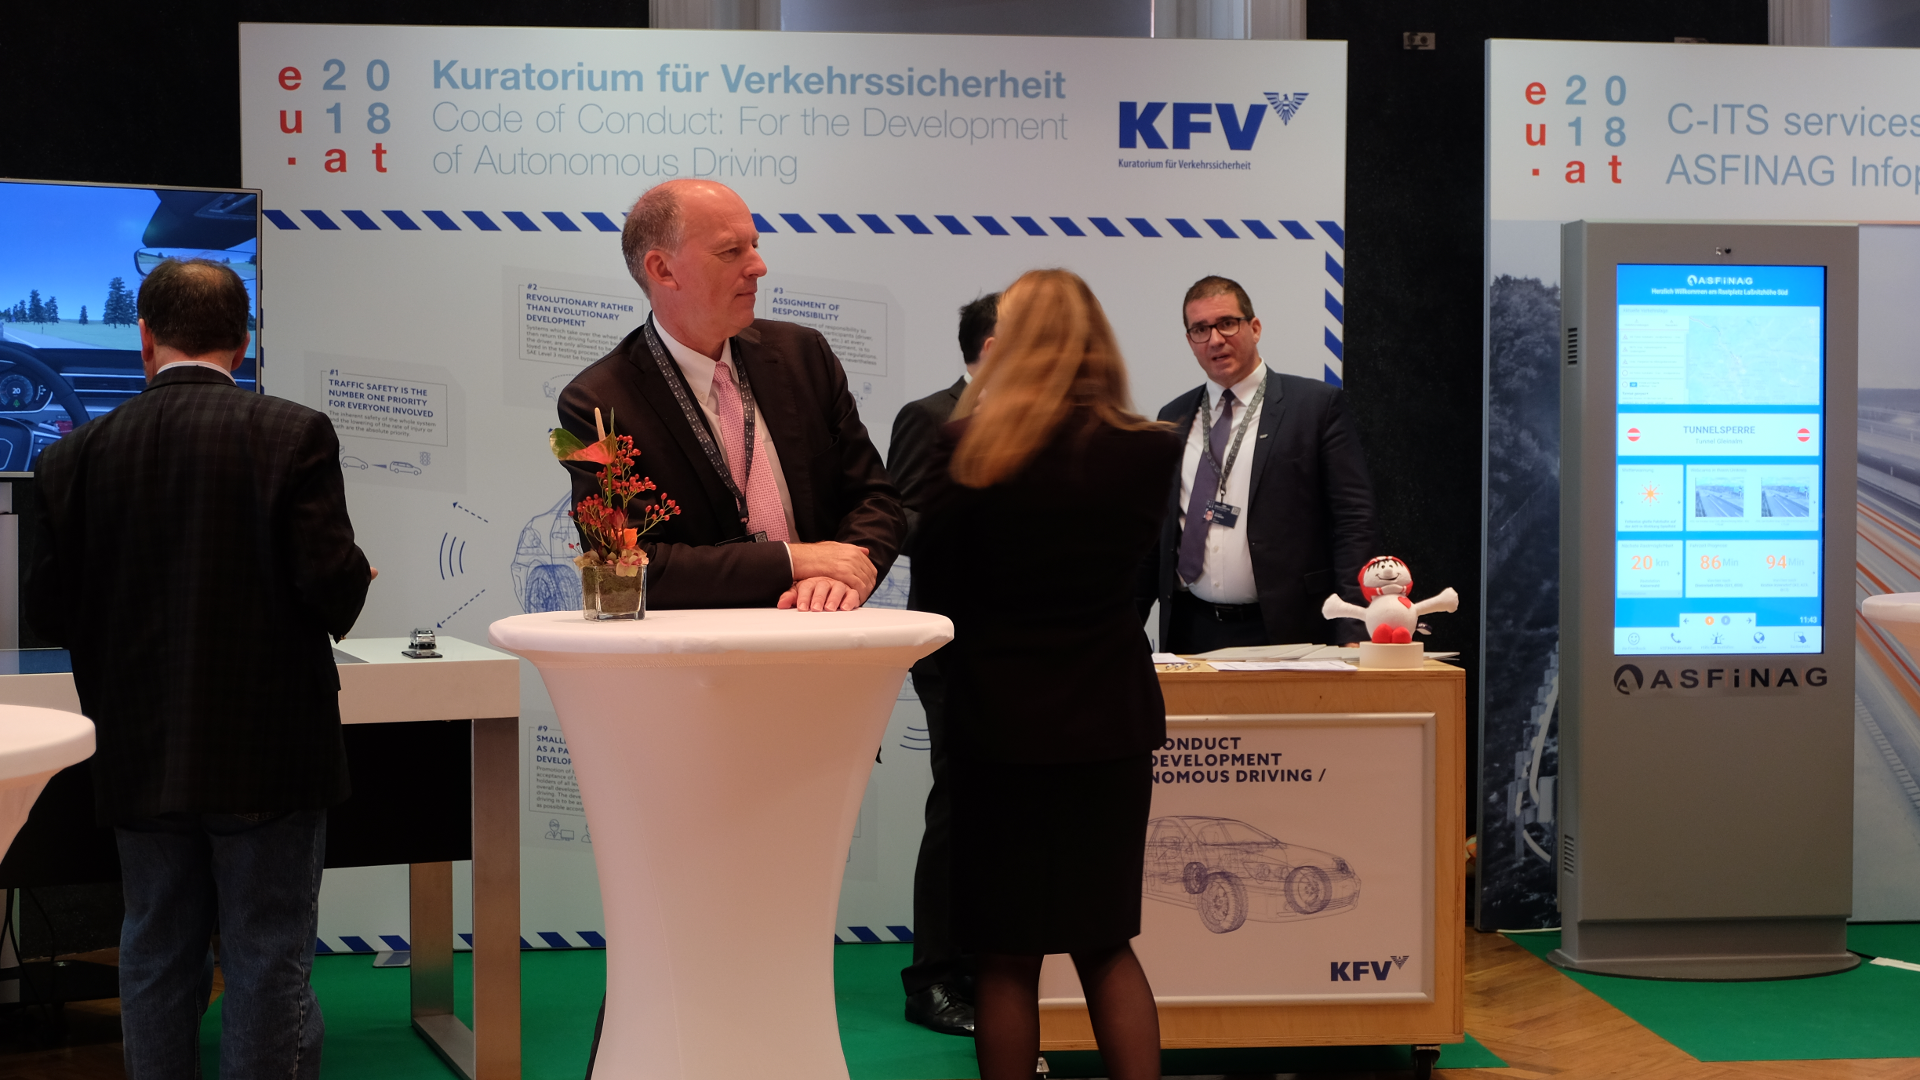 Informelles Treffen der EU Verkehrs und Umweltminister-Fachmesse-KFV-Kuratorium für Verkehrssicherheit